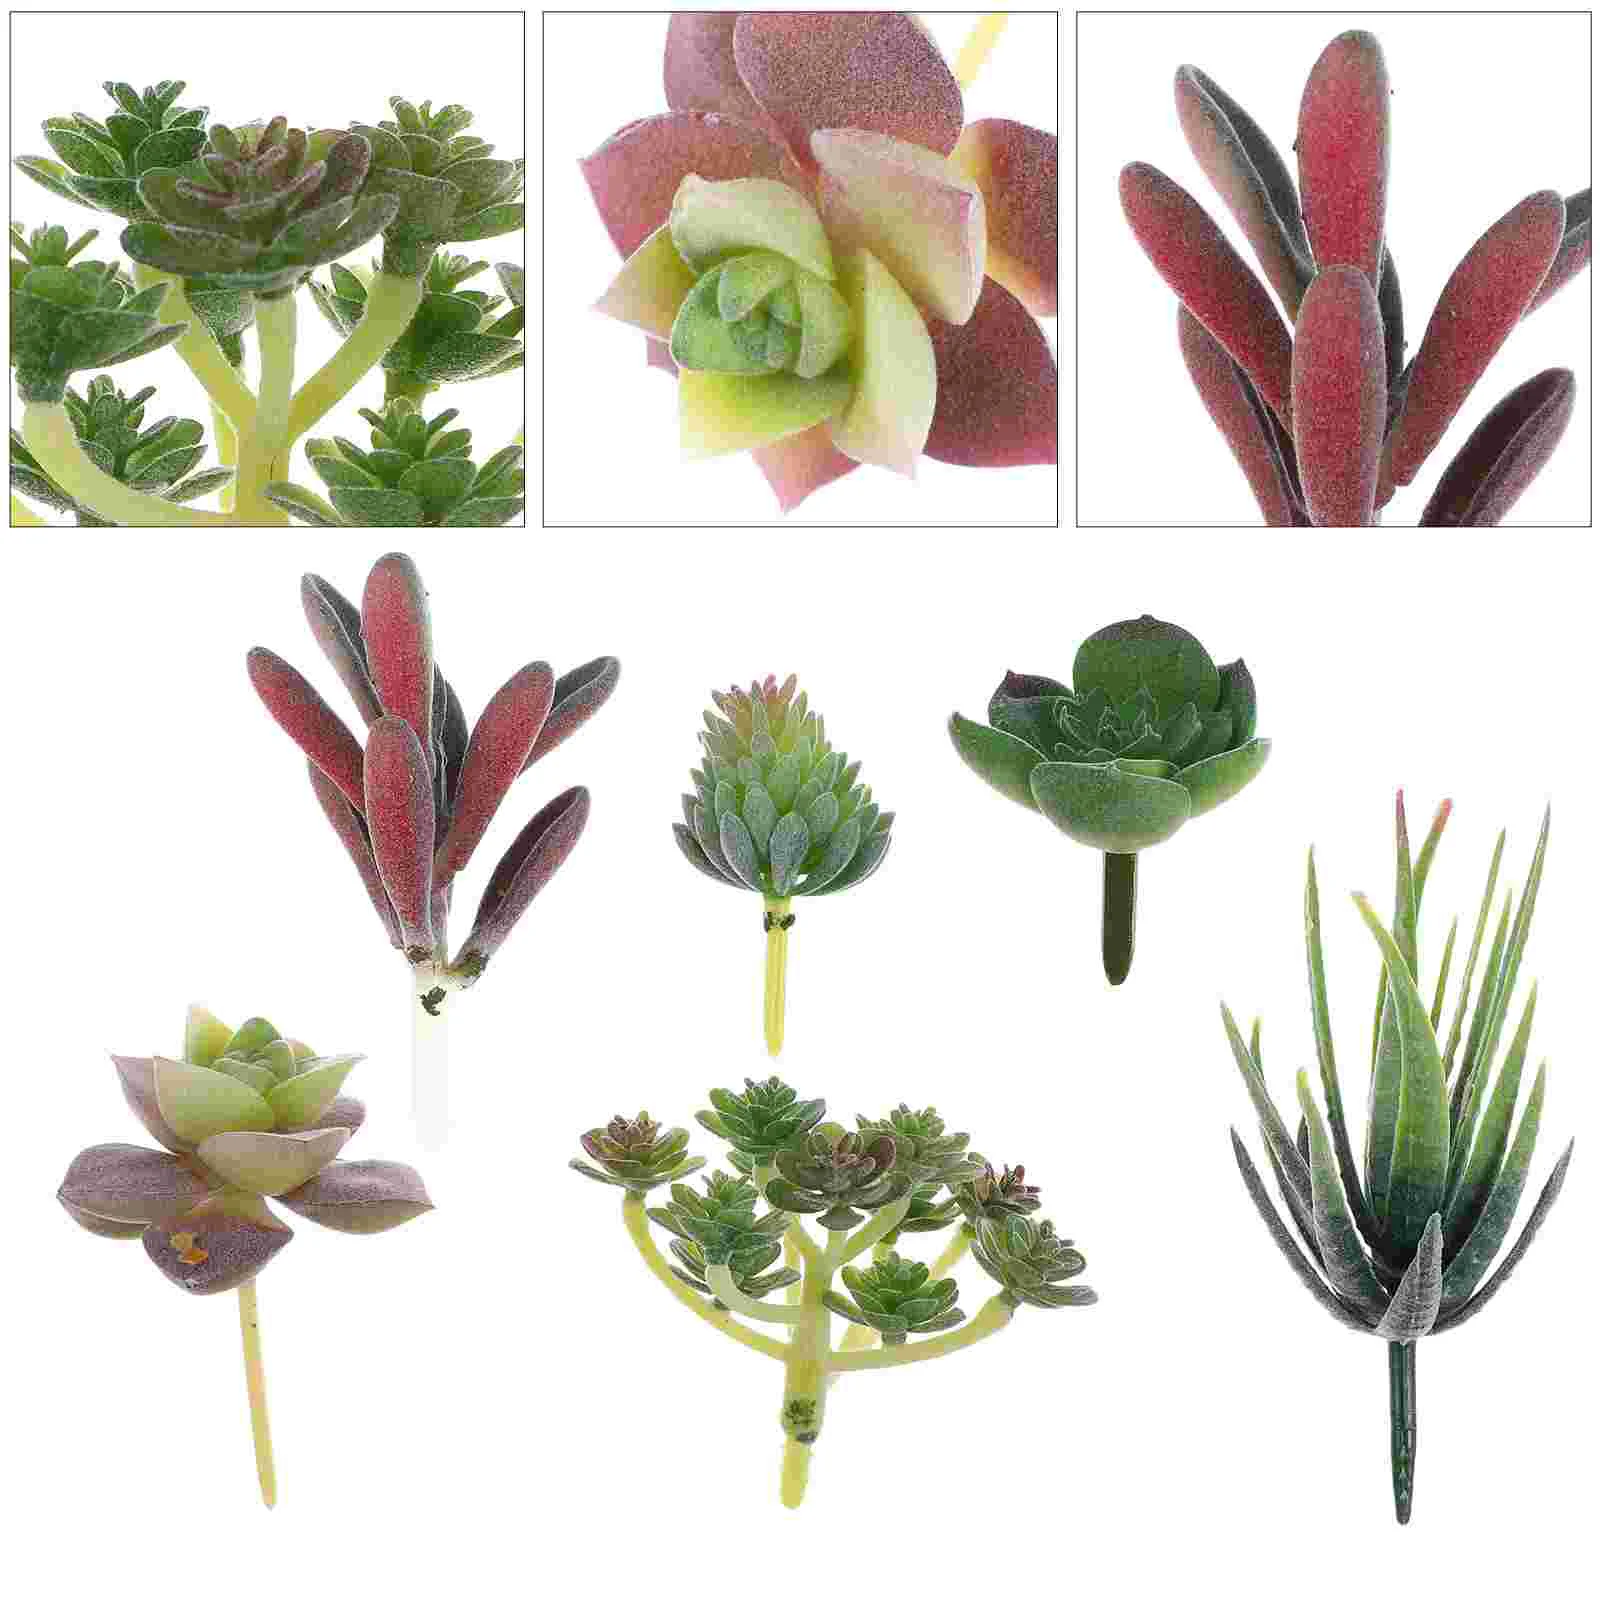 

6 Pcs Garden Arrangement Decor Miniature Plants Artificial Succulent Unpotted Succulents Indoor Decorative Faux Fake